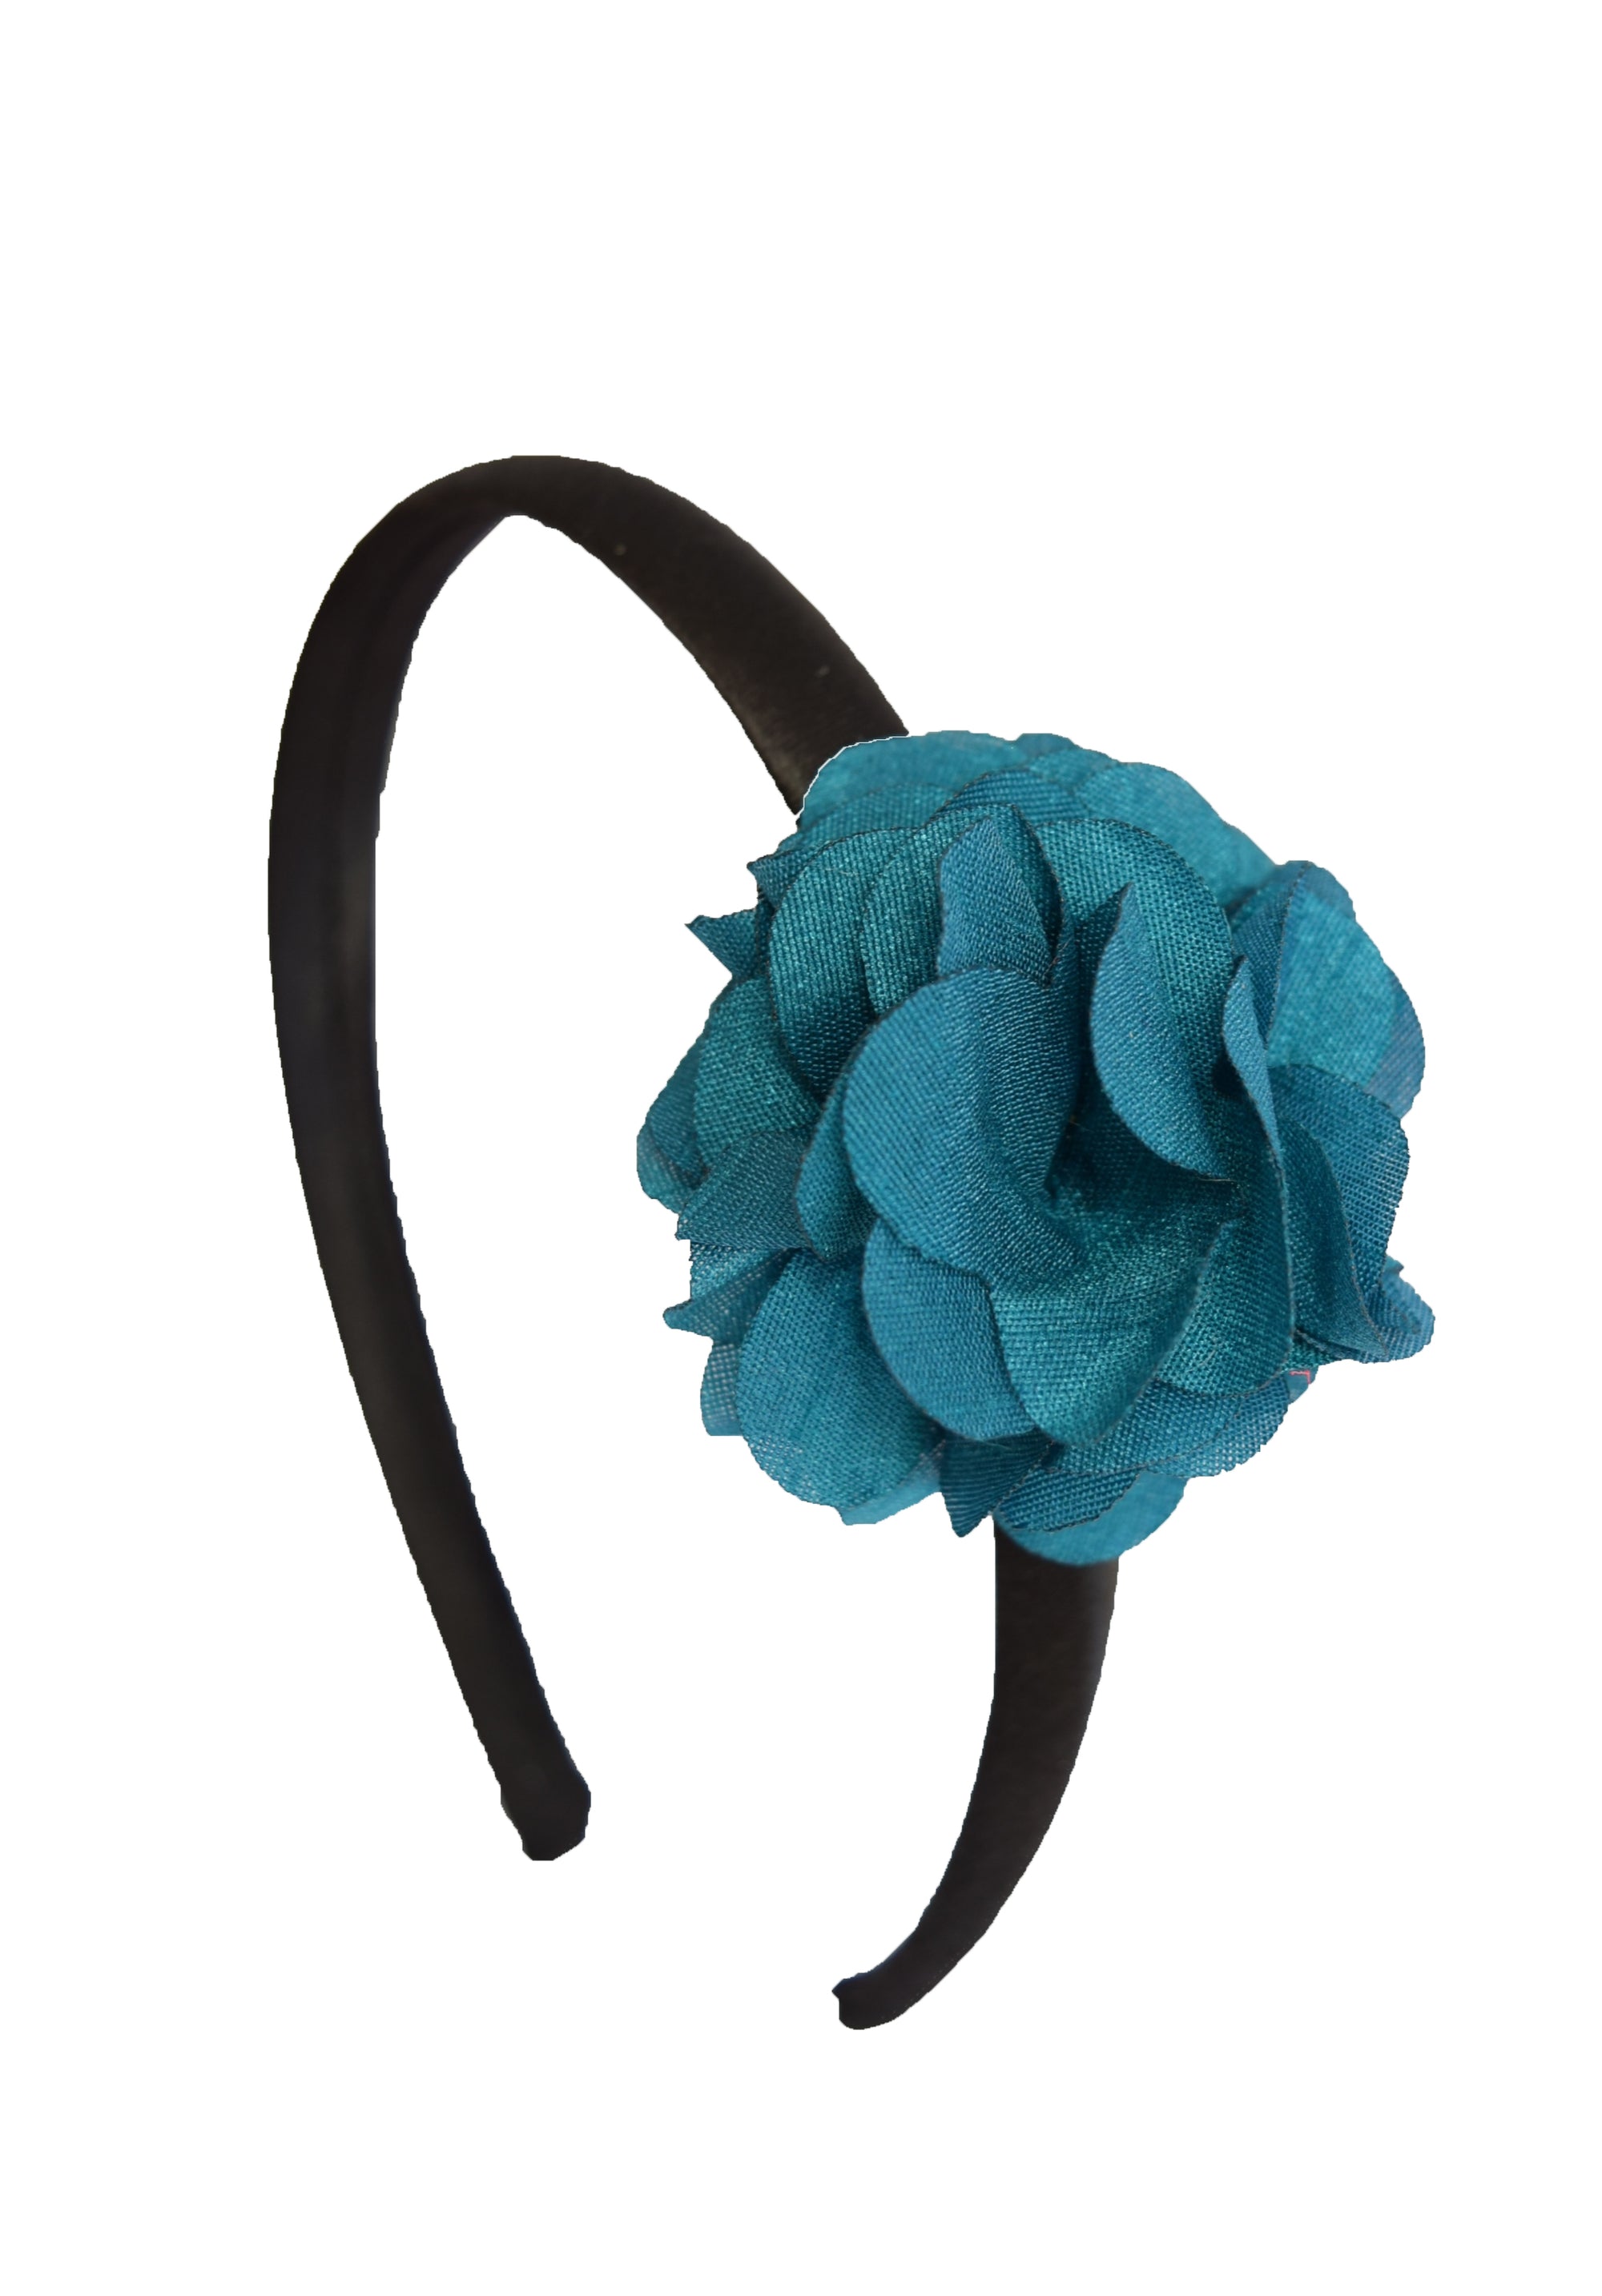 Teal Green flower on Black Satin hair bands for girls